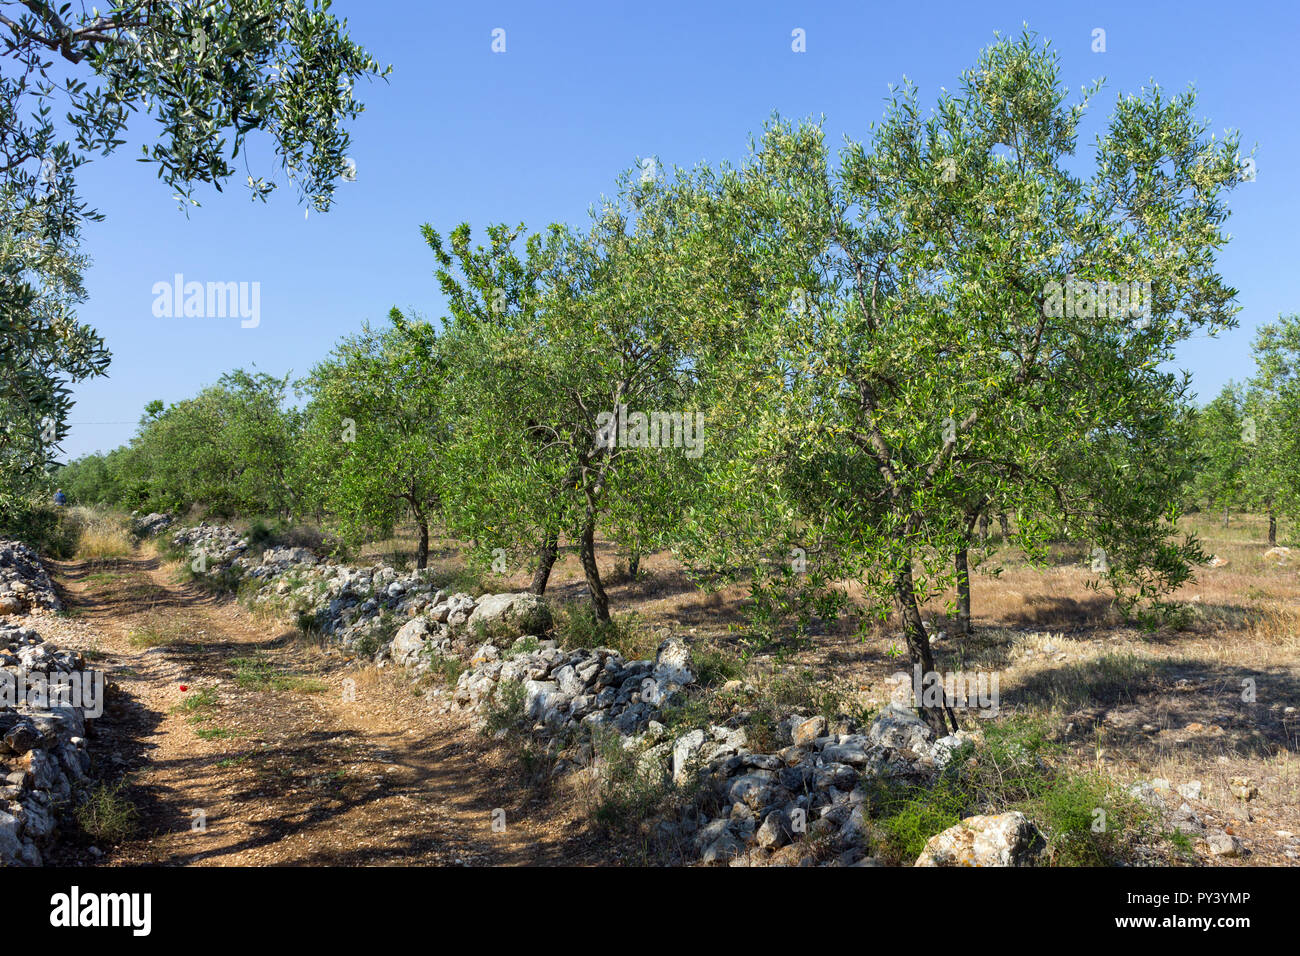 Italy, Apulia, olive trees Stock Photo